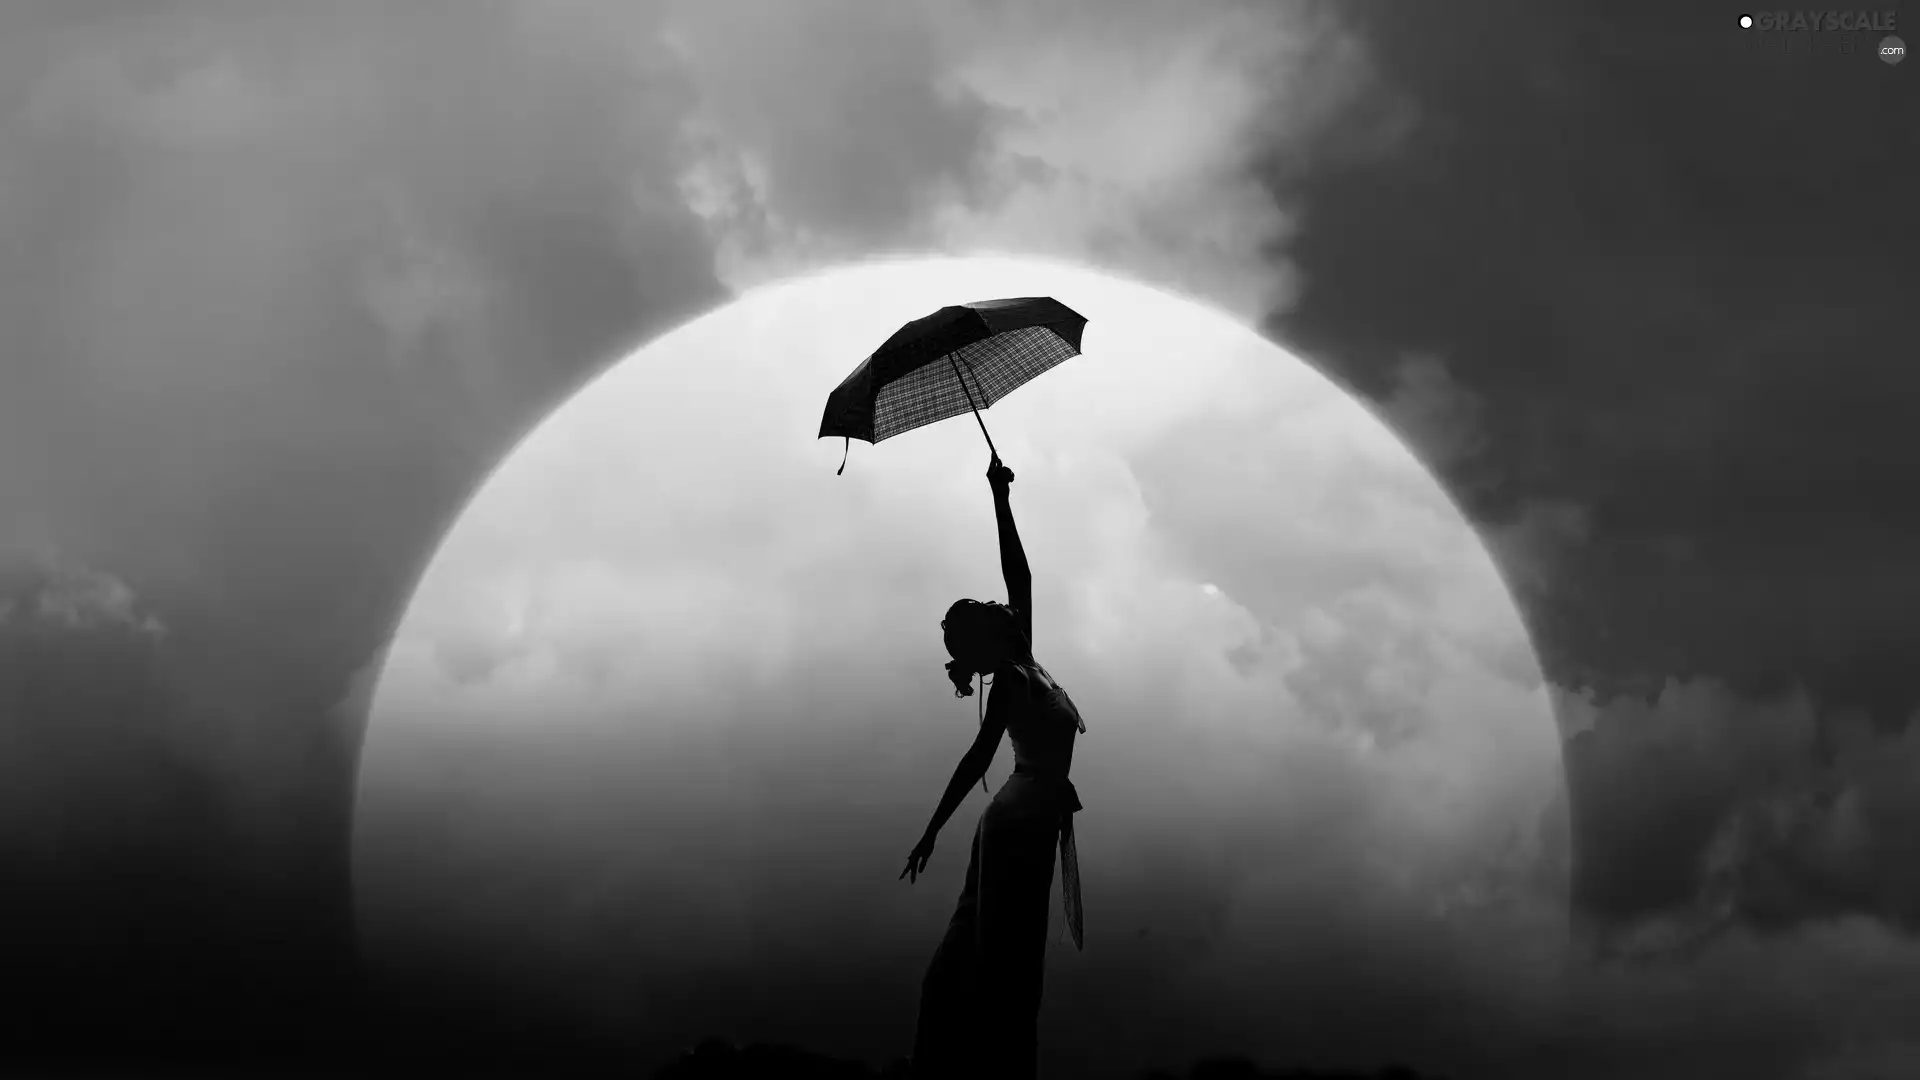 west, Women, Umbrella, sun